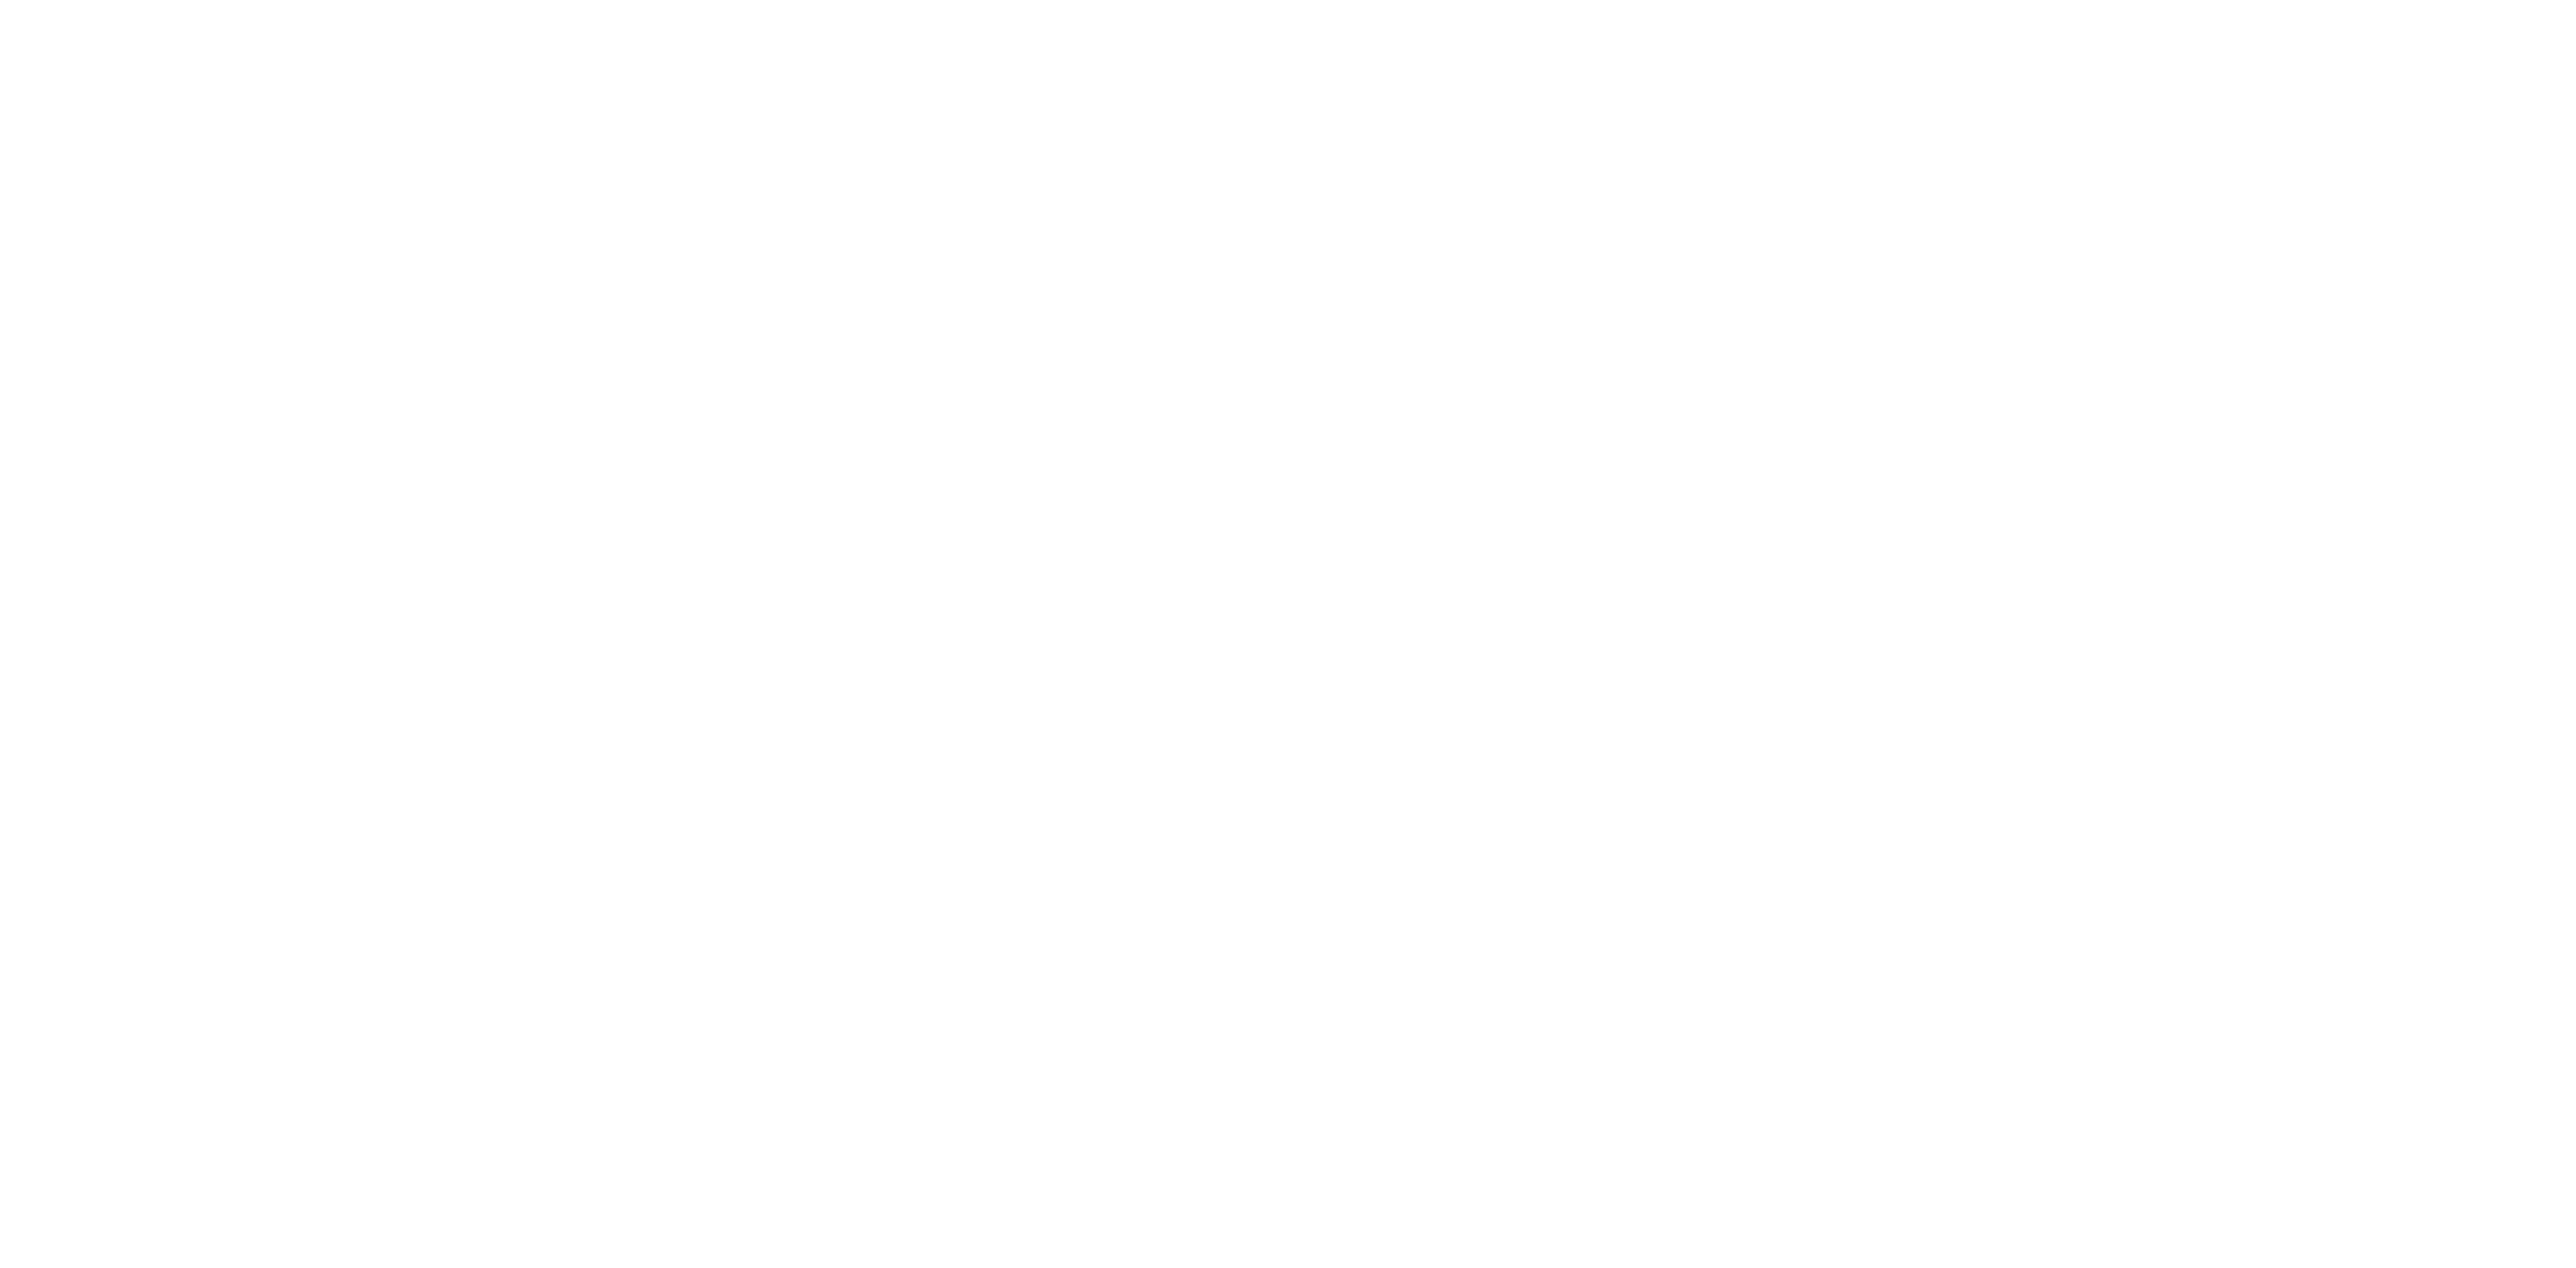 Opera on Film